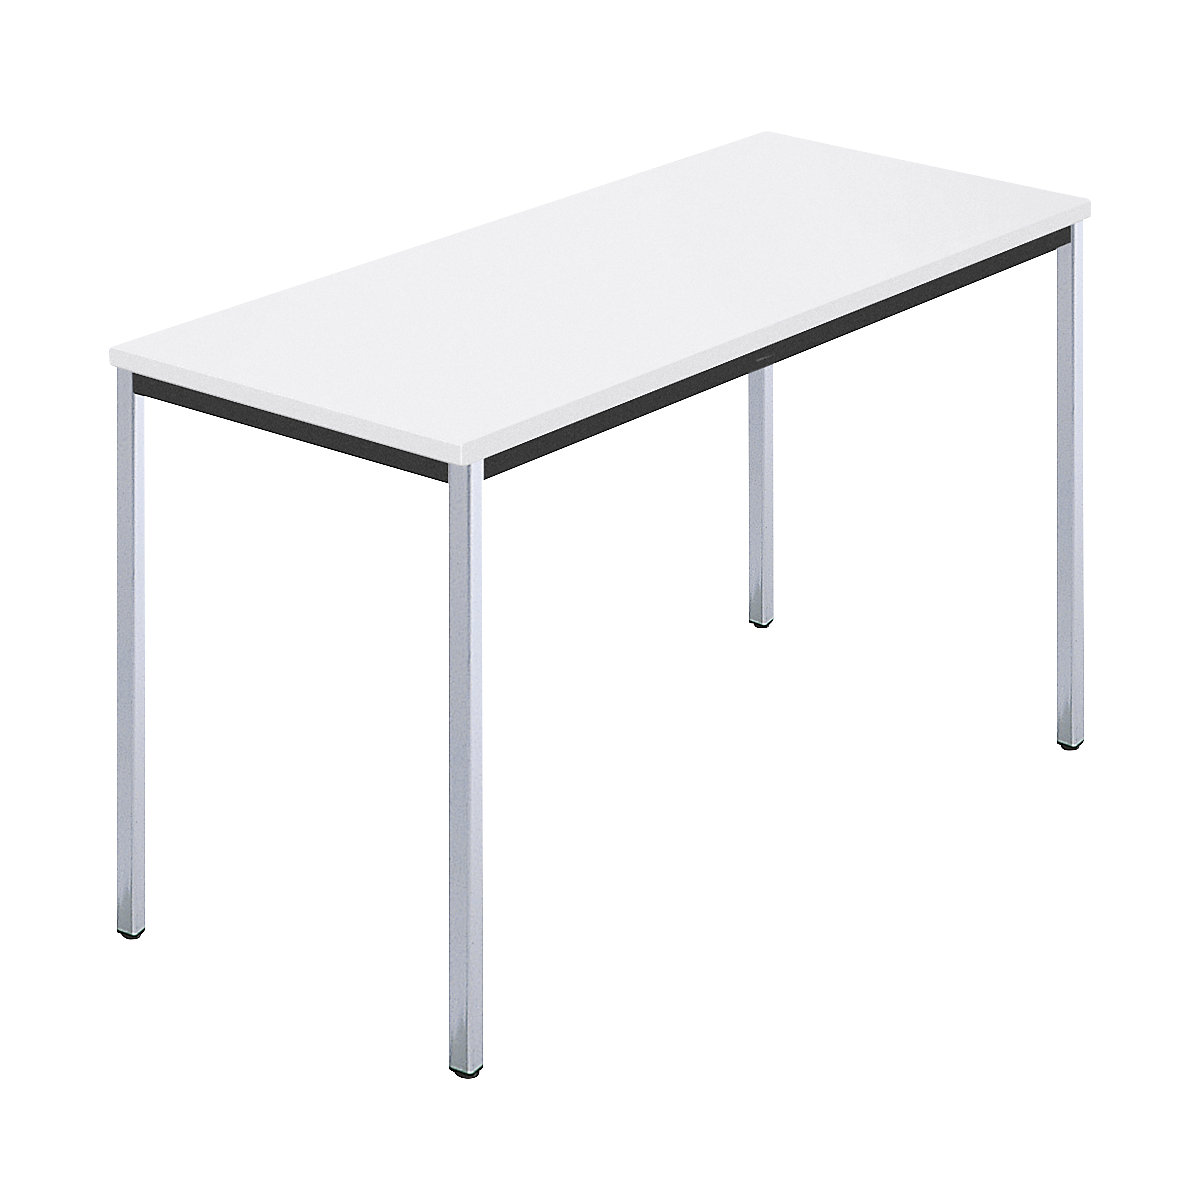 Rechthoekige tafel, met vierkante, verchroomde tafelpoten, b x d = 1200 x 600 mm, wit-5